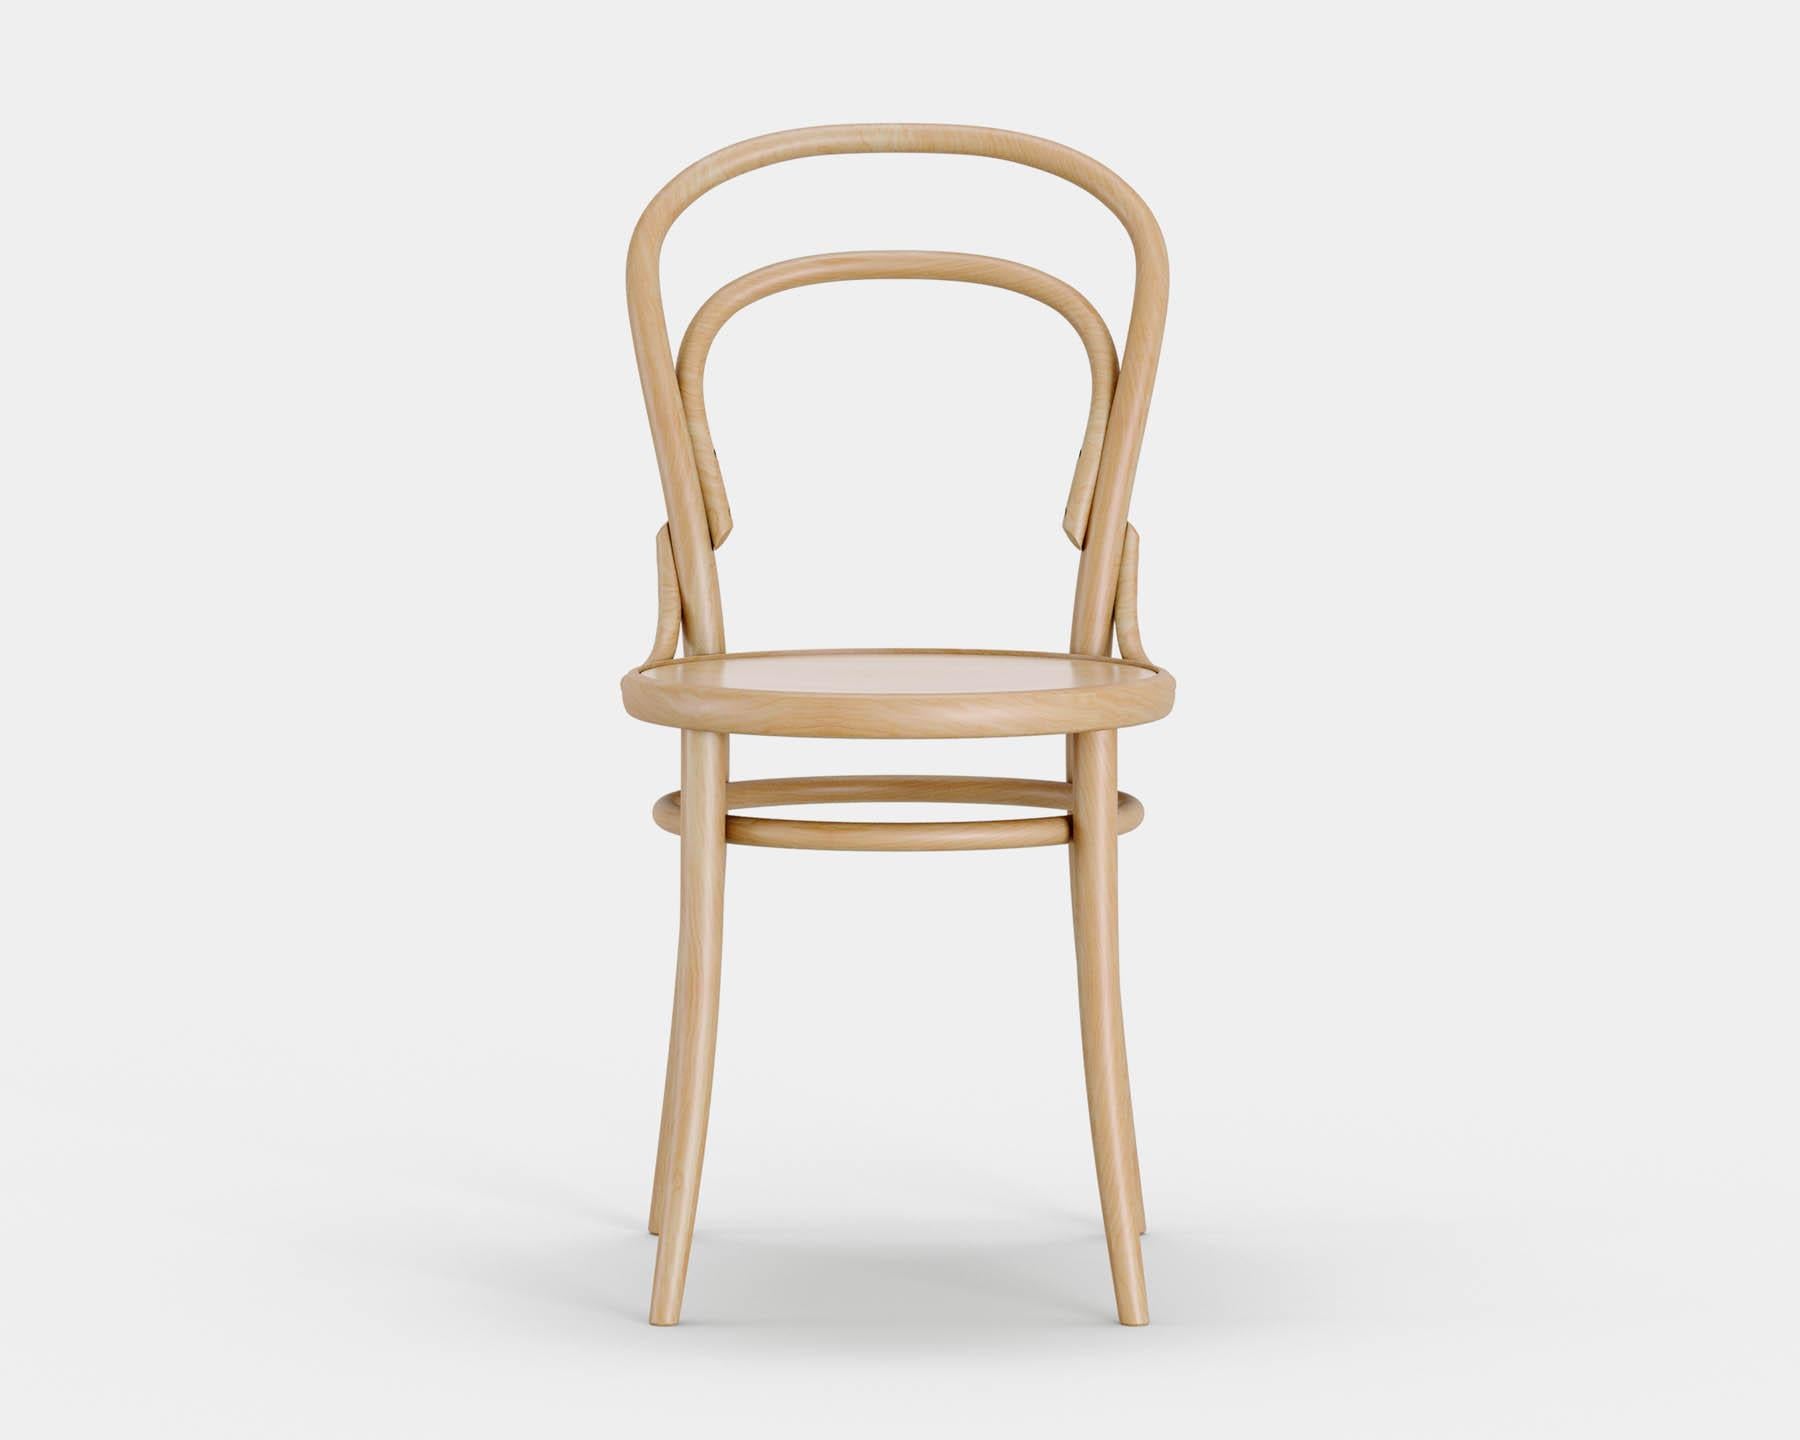 Stuhl Nr. 14
Der ikonische Bistrostuhl wurde 1869 von Michael Thonet entworfen und wird heute in der gleichen Manufaktur in der Tschechischen Republik von TON hergestellt. 

Holz: Buche massiv 
Ausführung: natürliches Licht 
Sitz: schlichtes Holz